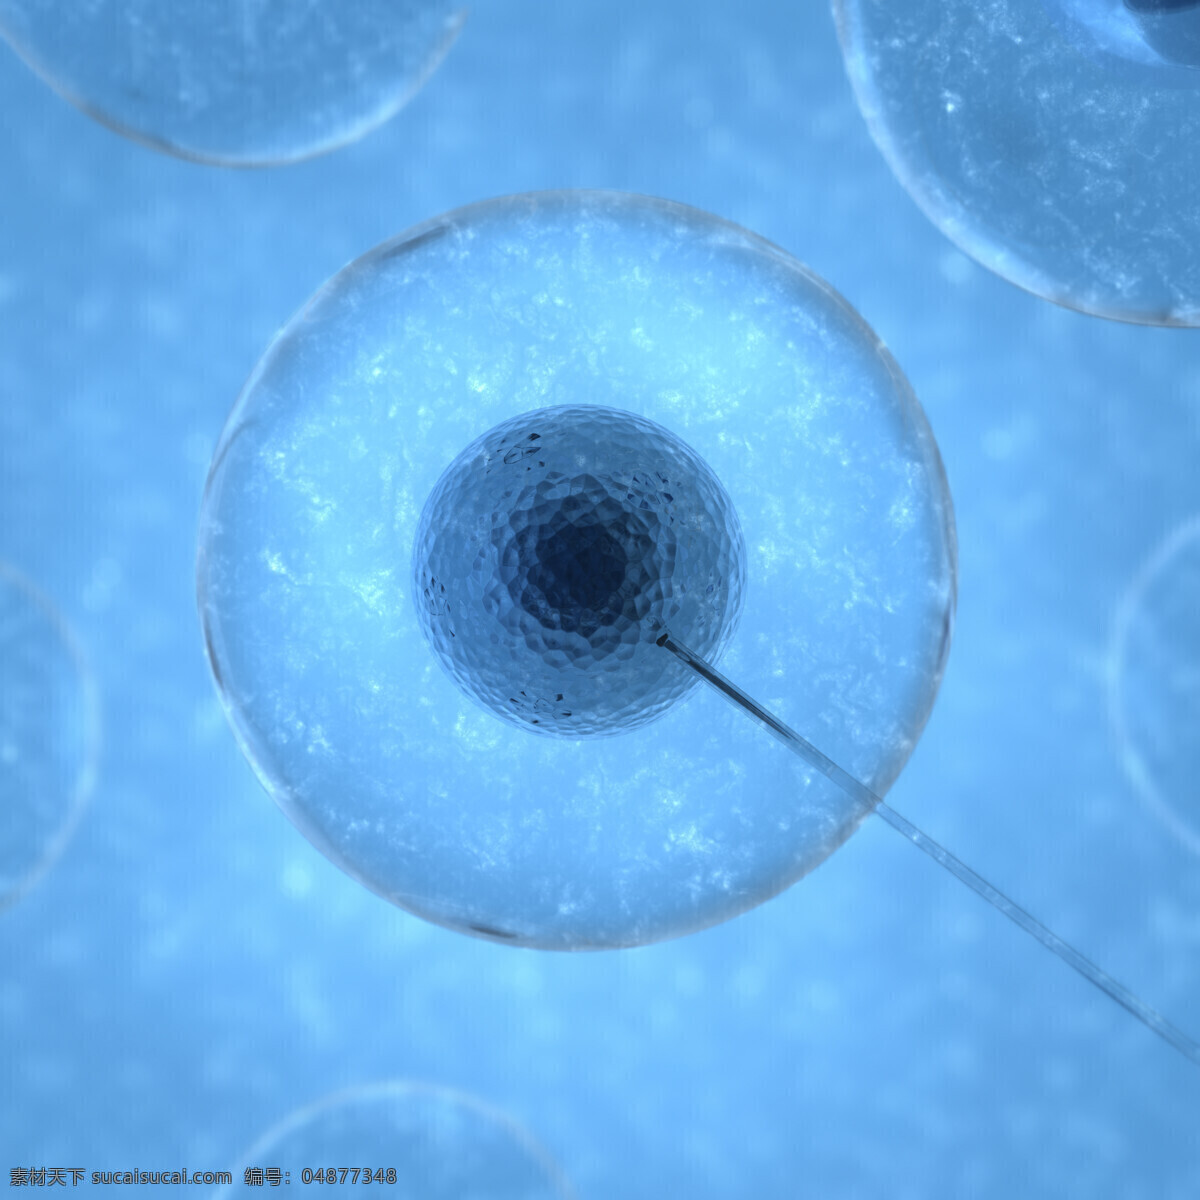 显微镜 下 细胞 放大 细胞核 细胞膜 实验 蓝色液体 医疗 细胞图片 现代科技